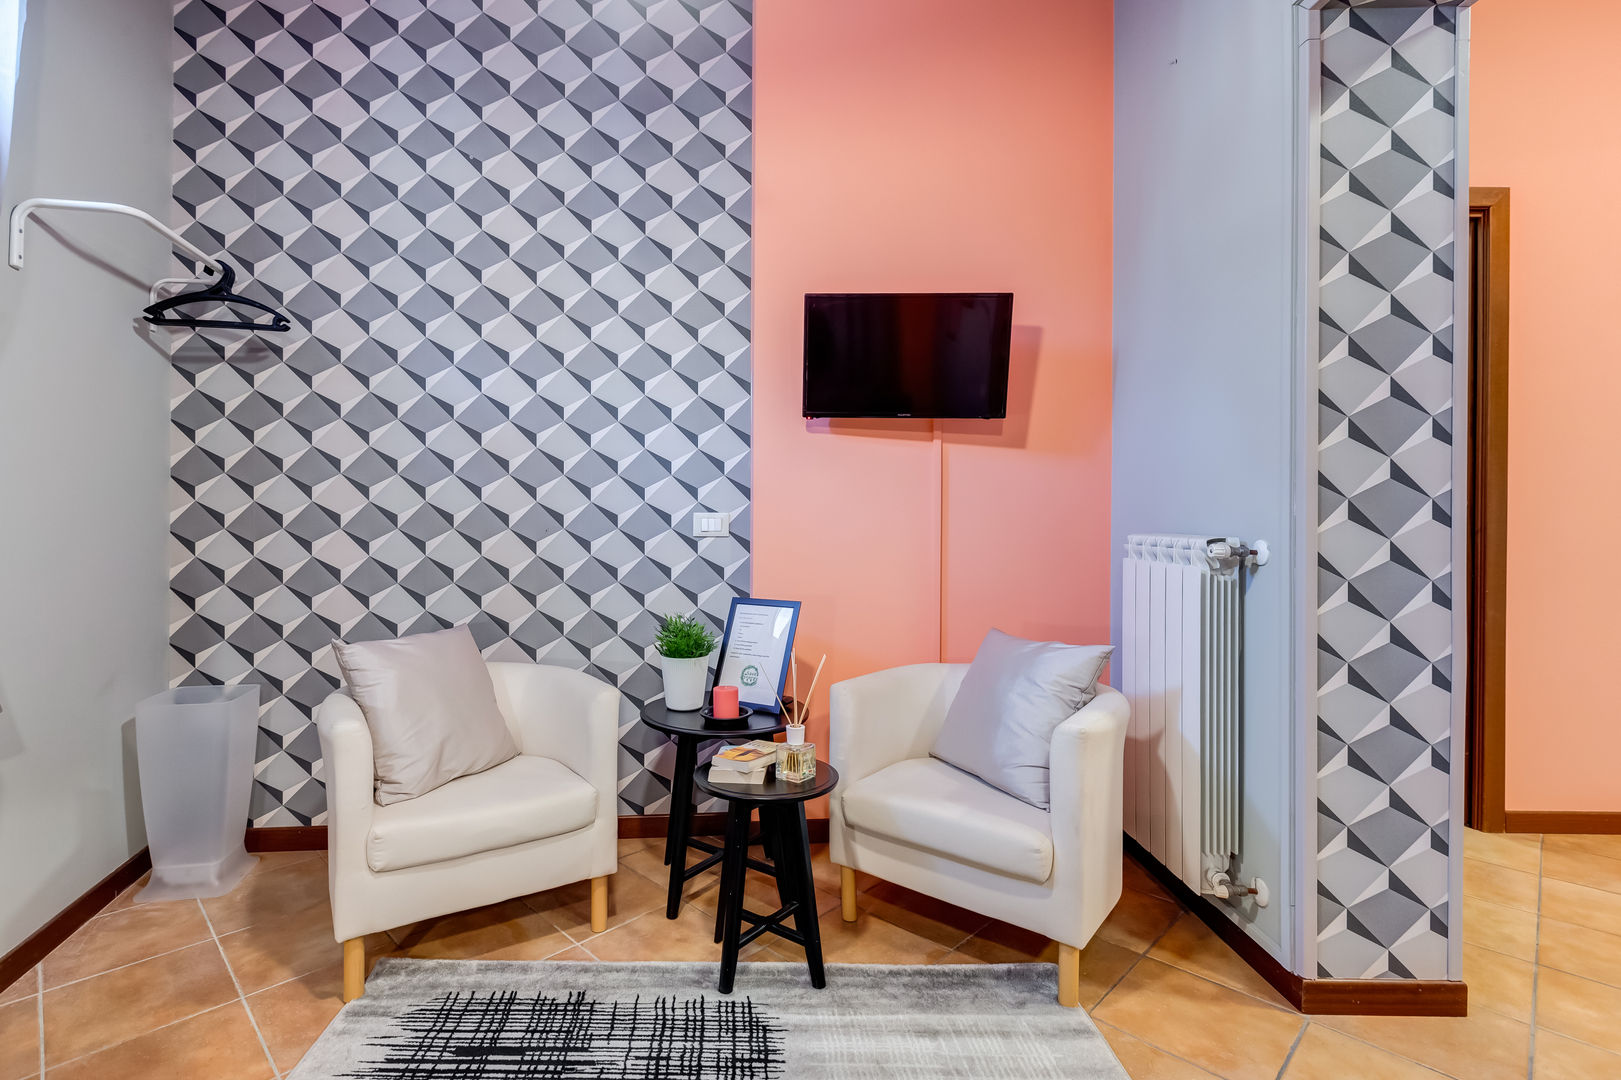 Relooking appartamento in Ghetto Ebraico a Roma, Creattiva Home ReDesigner - Consulente d'immagine immobiliare Creattiva Home ReDesigner - Consulente d'immagine immobiliare Living room